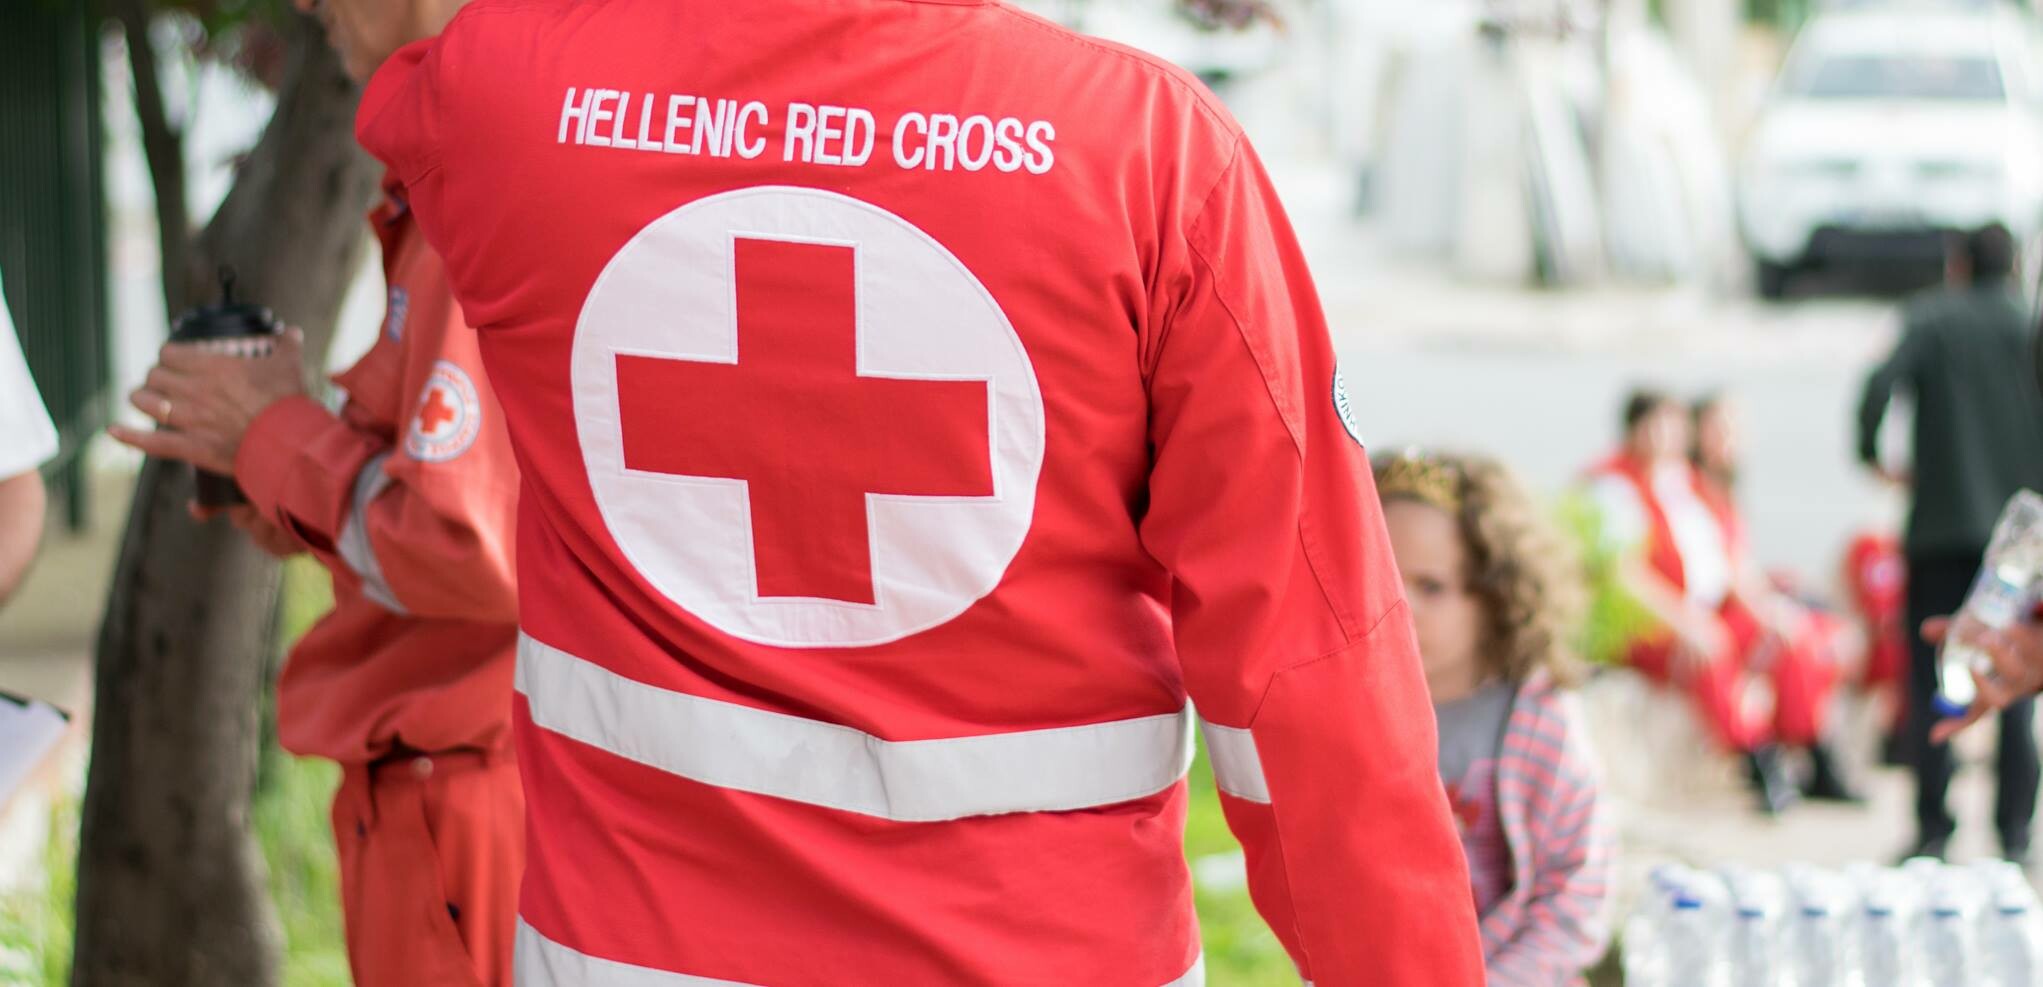 Εξορμήσεις ενημέρωσης για θέματα υγείας από τον Ερυθρό Σταυρό στο Δήμο Πυλαίας – Χορτιάτη